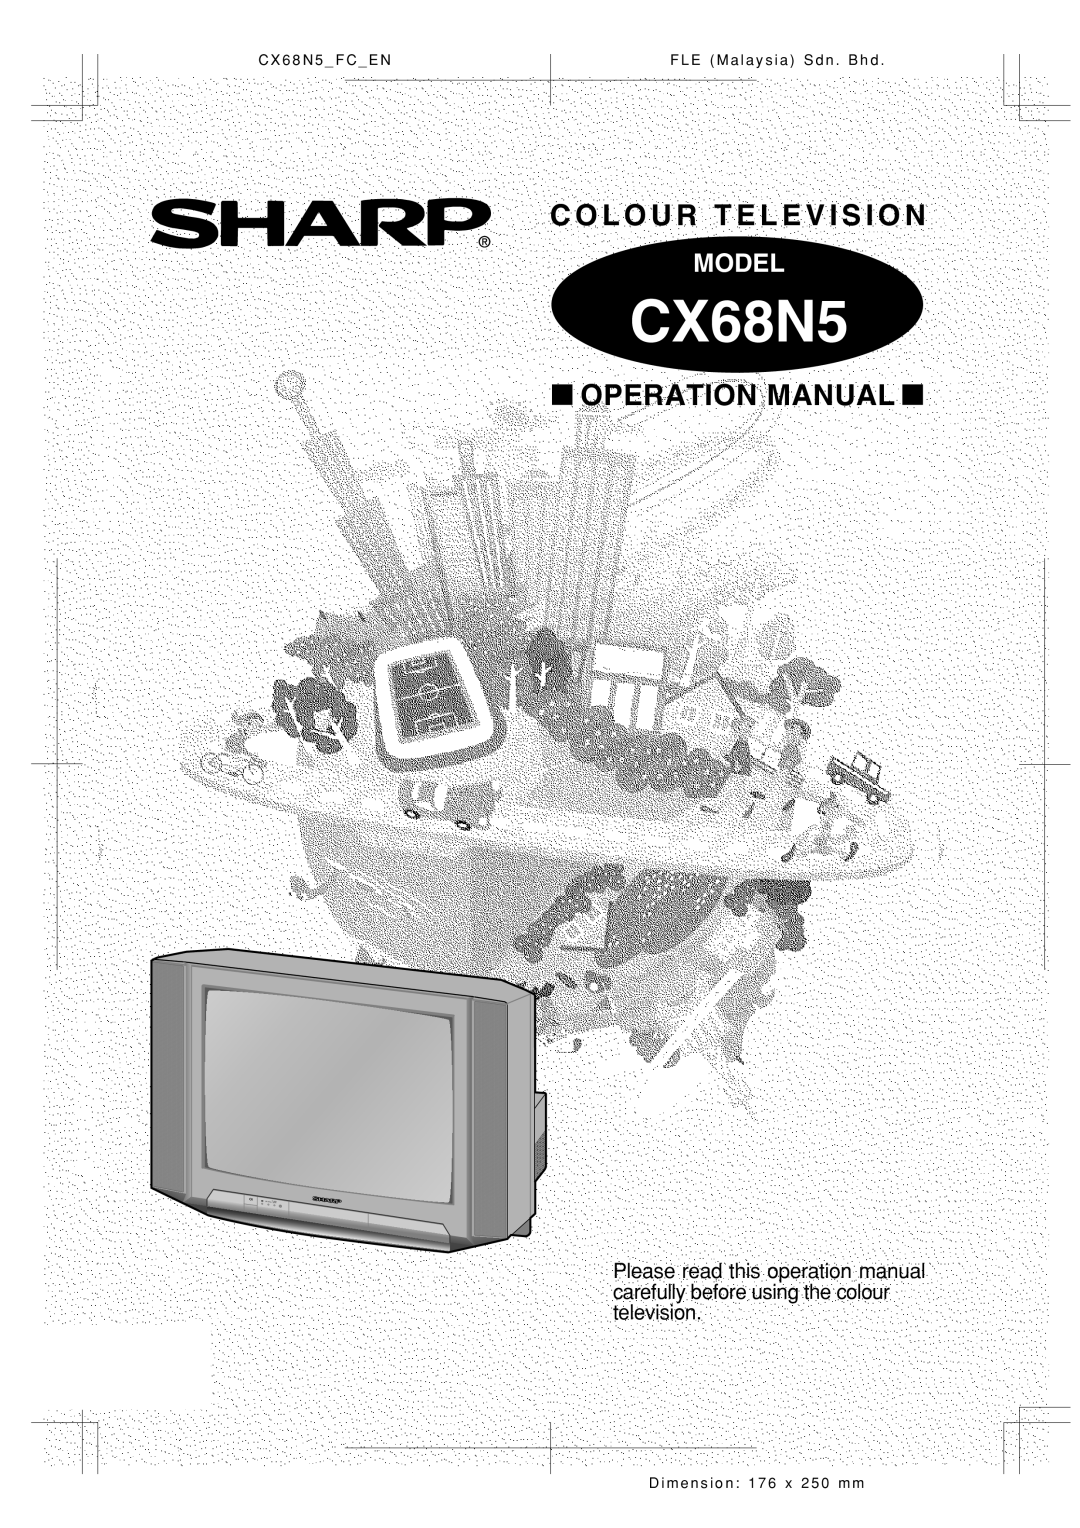 Sharp Cx68n5 operation manual C O L O U R T E L E V I S I O N, Operation Manual, CX68N5, Model 